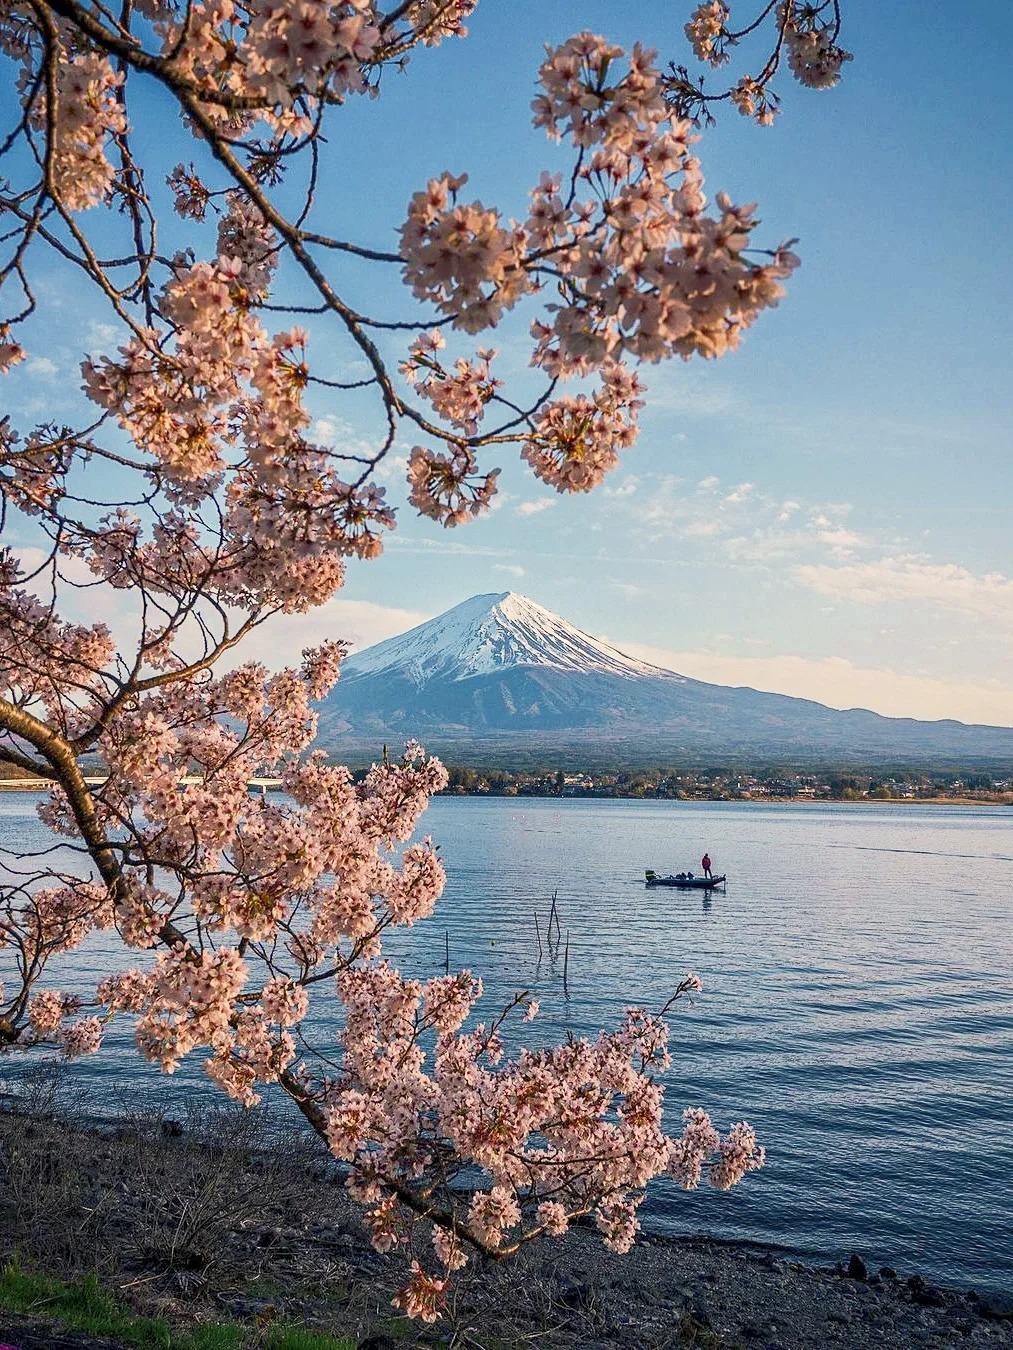 拍到了人生照片❗富士山樱花季必打卡攻略✅